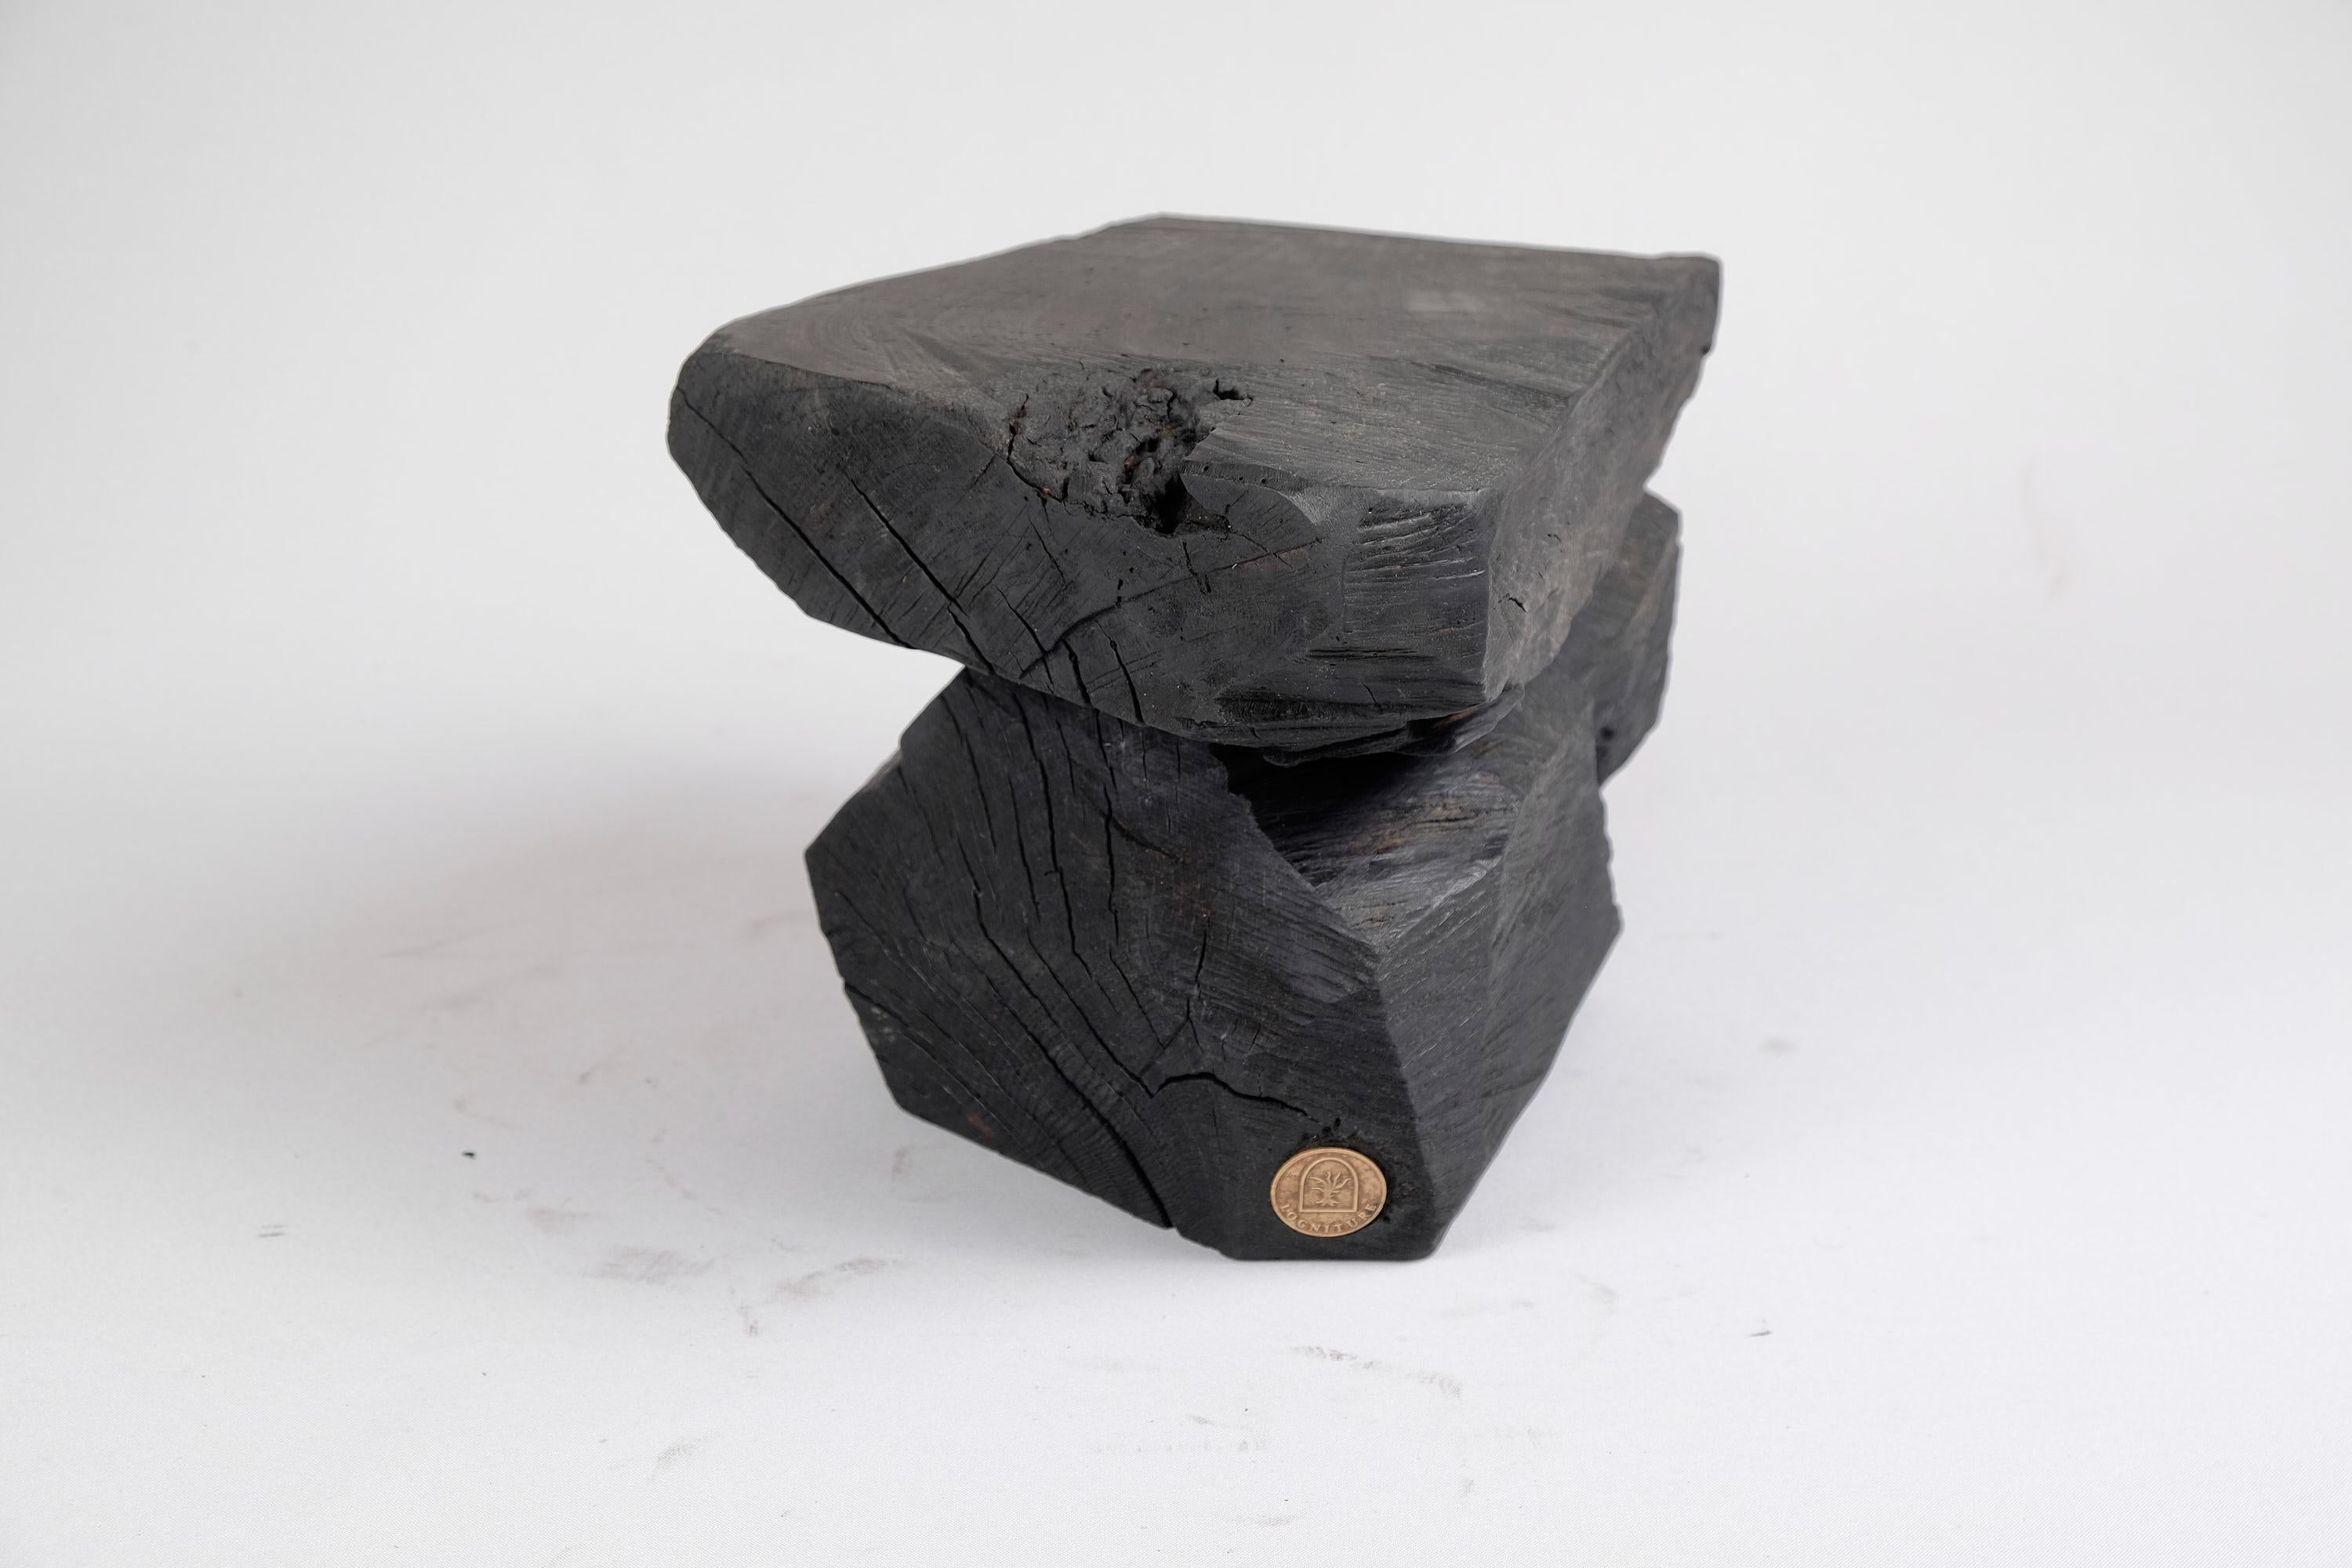 Brutalist Solid Burnt Wood, Sculptural Stool/Side Table, Rock, Original Design, Logniture For Sale